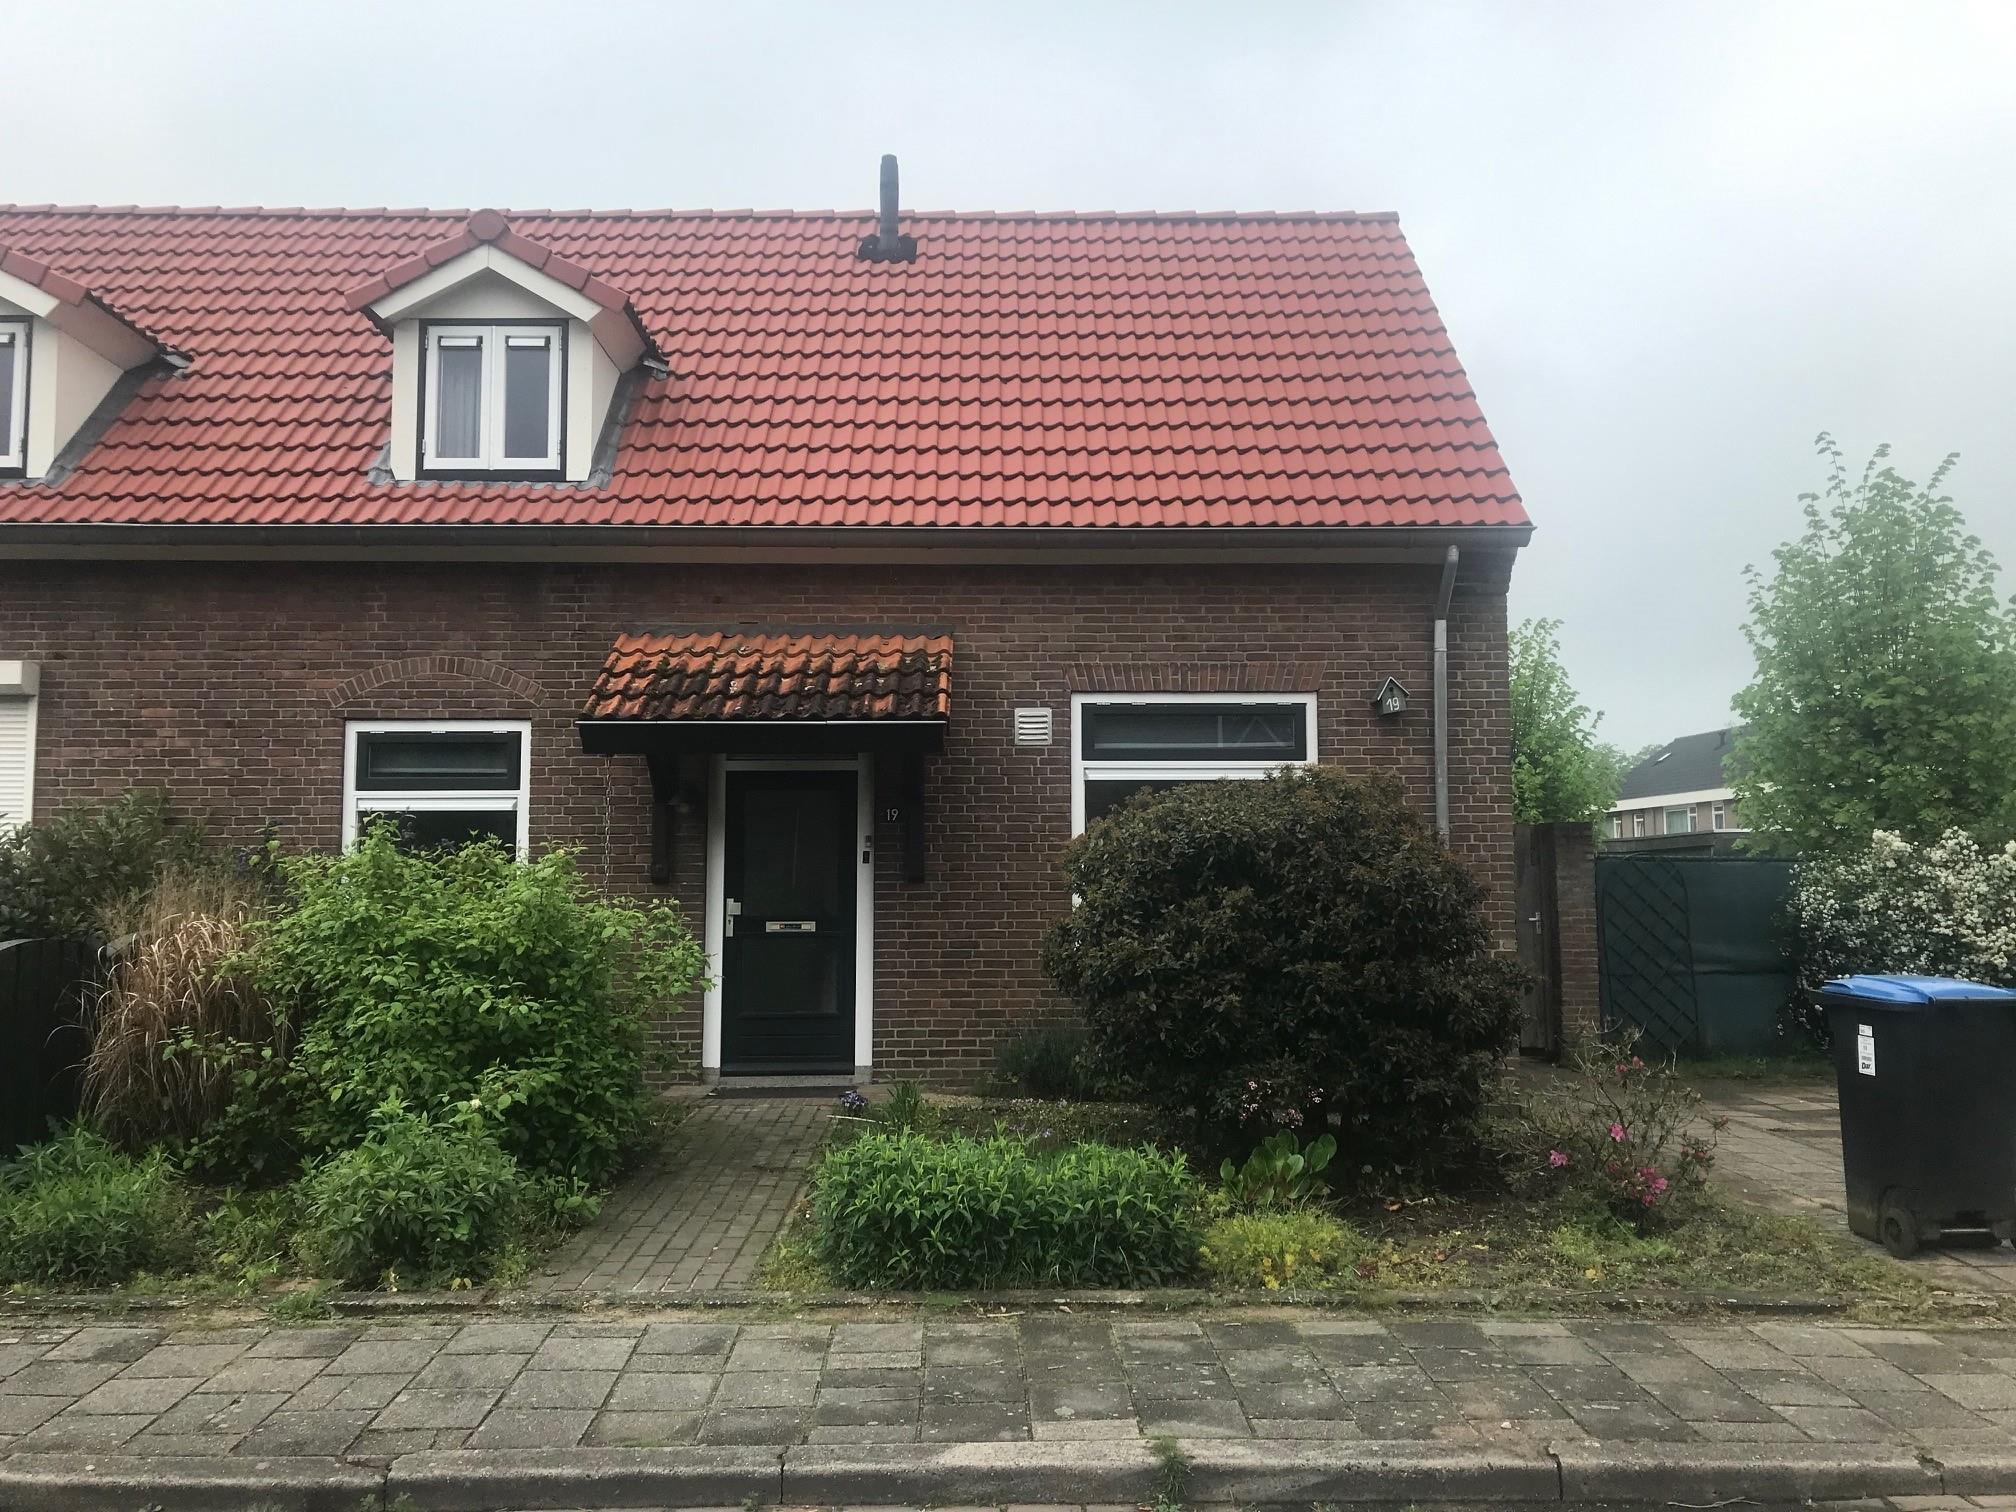 Heer Zegerstraat 19, 6561 BP Groesbeek, Nederland